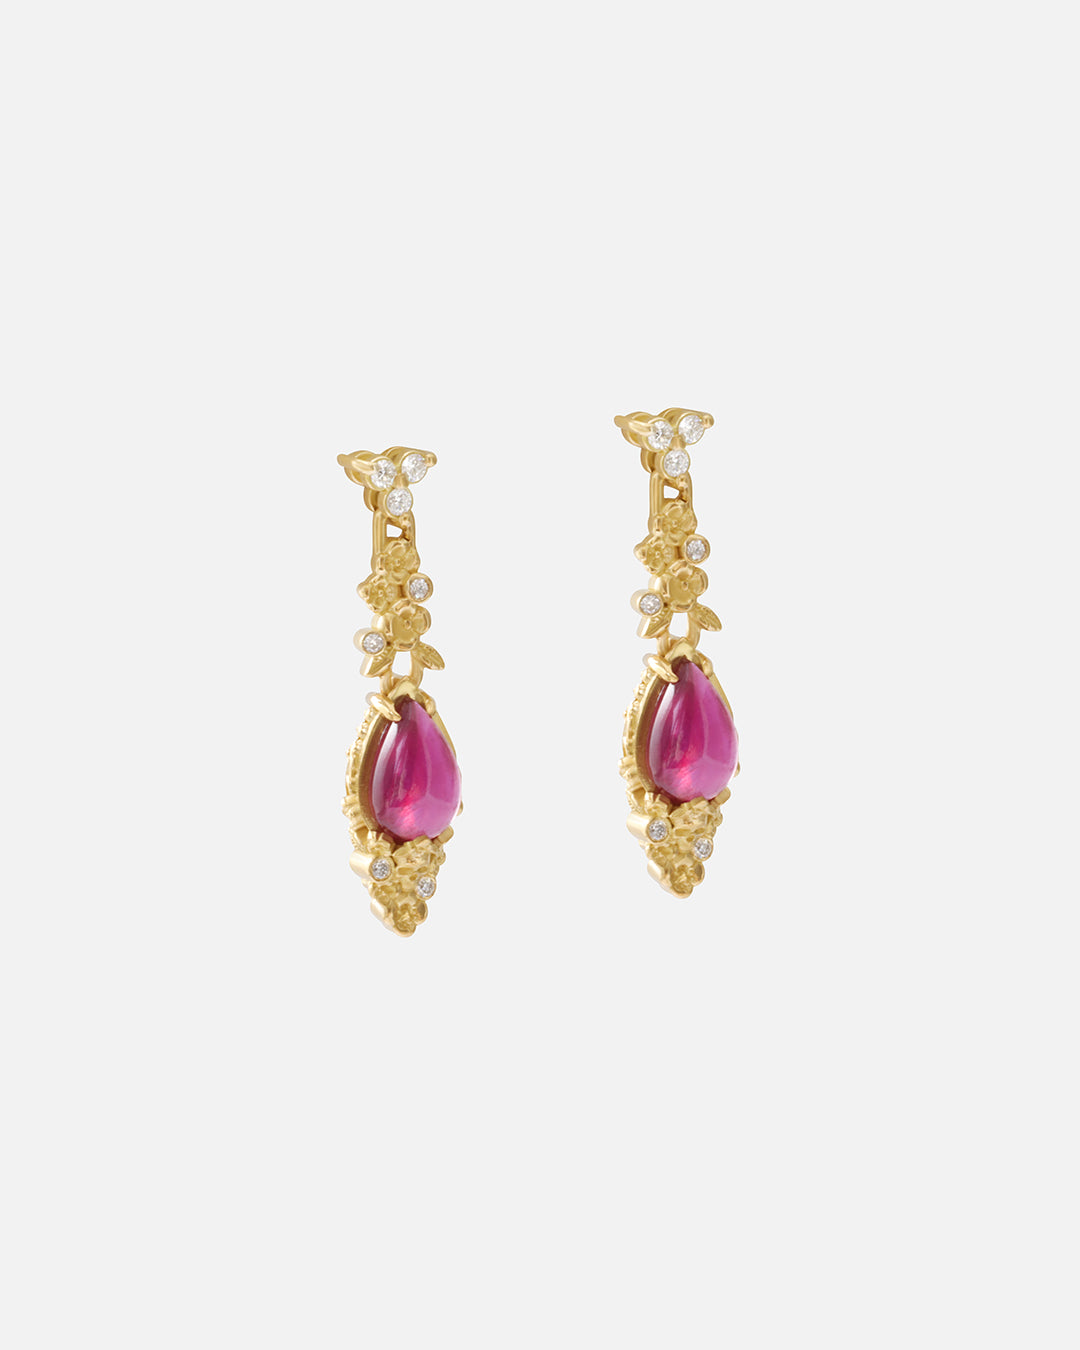 Ruby Skull Drops / Earrings By fitzgerald jewelry